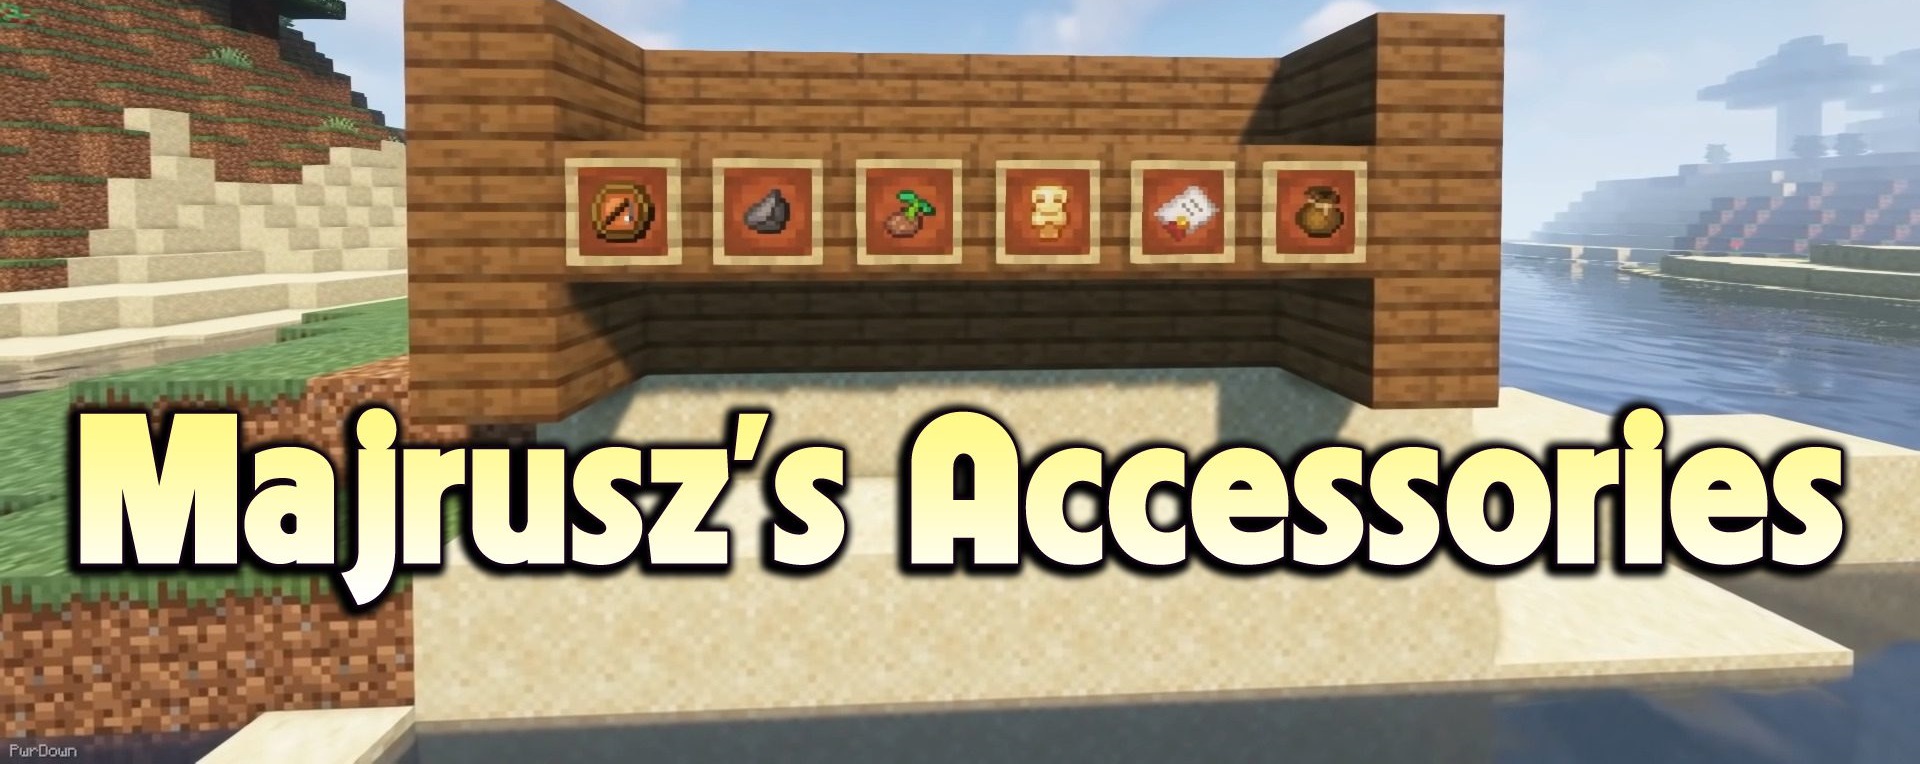 Majrusz’s Accessories screenshot 1